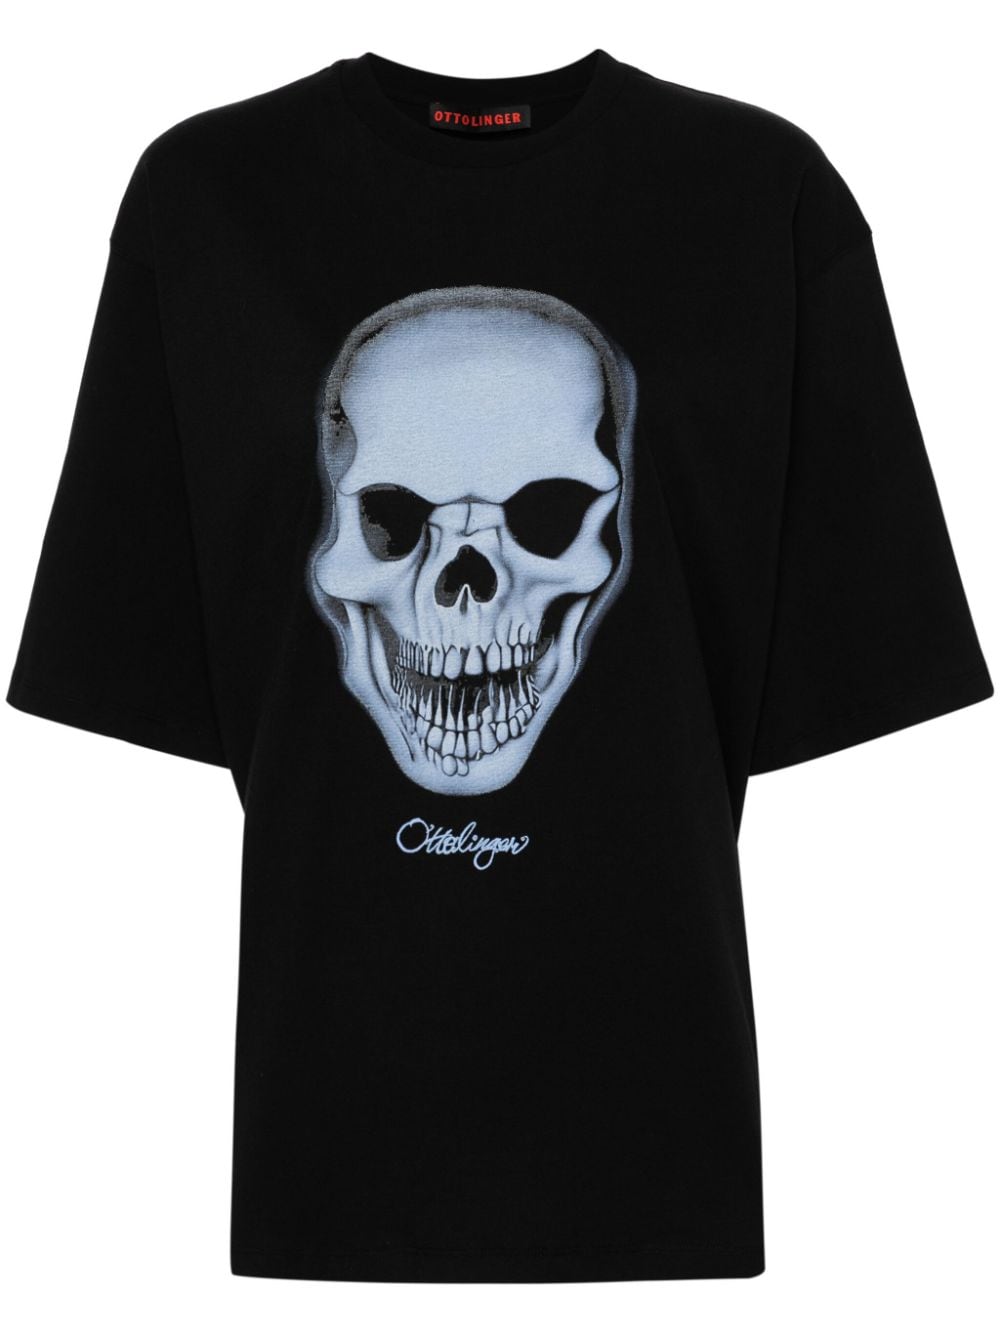 Ottolinger Katoenen T-shirt met doodskopprint Zwart